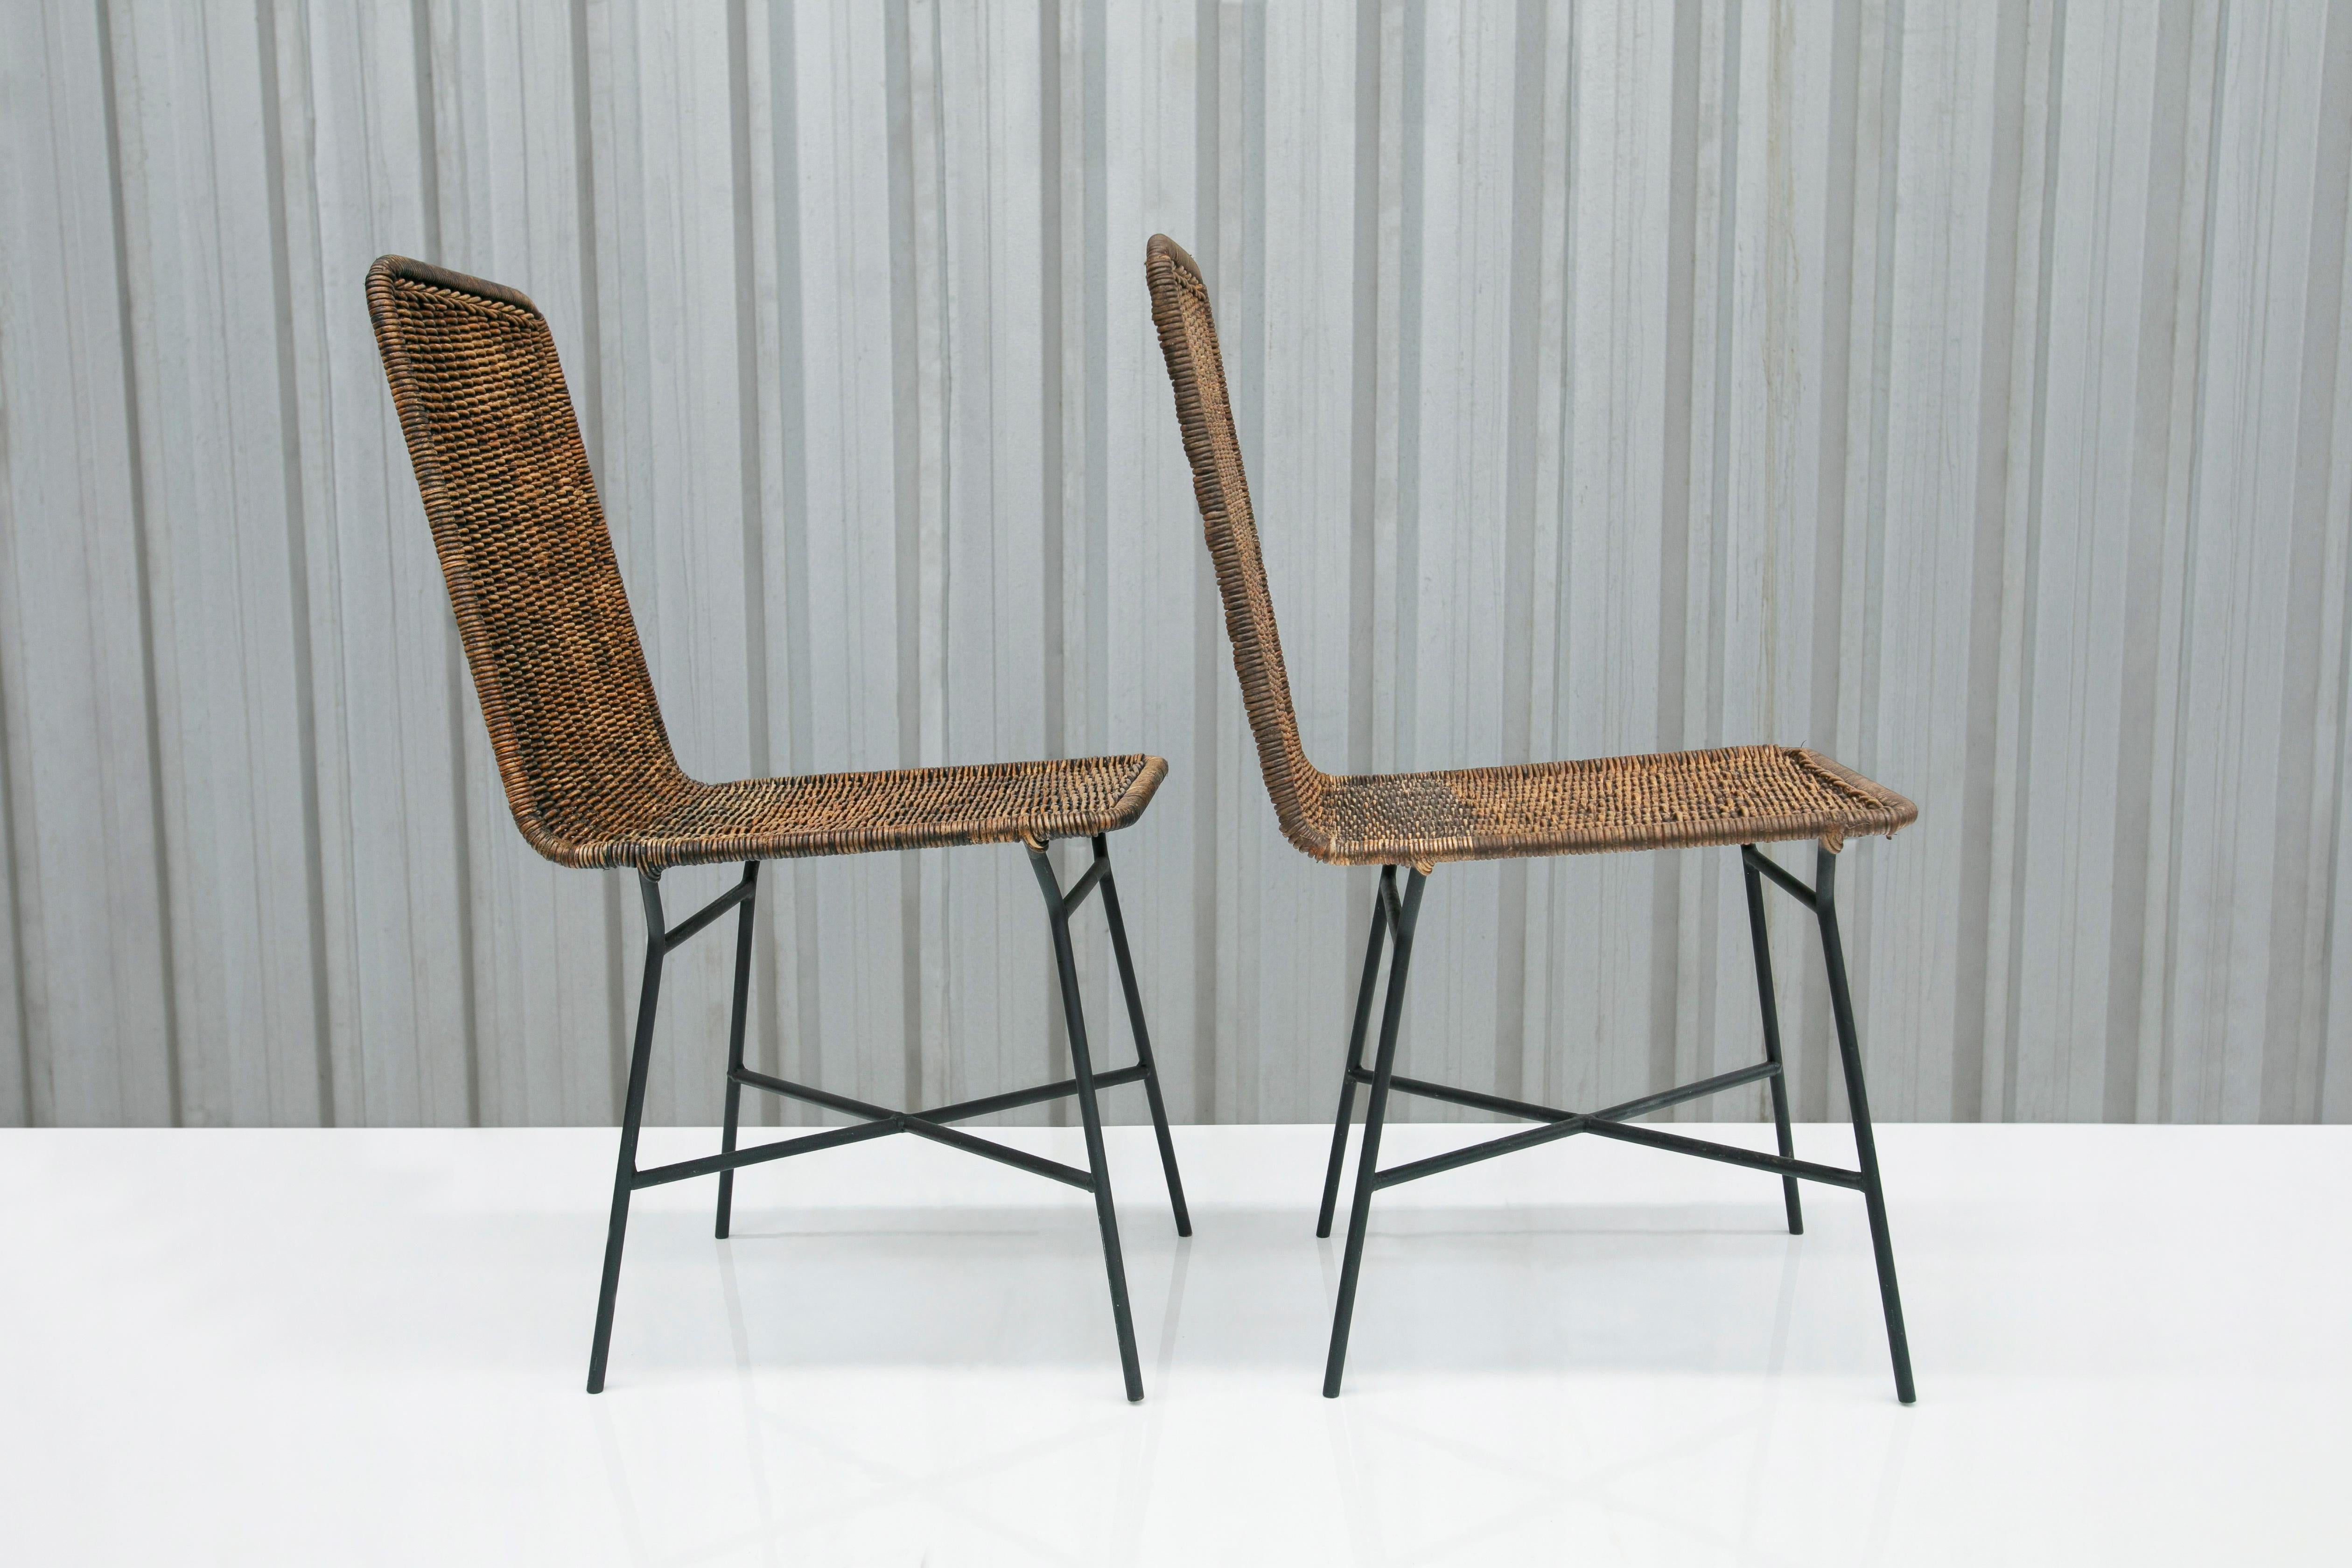 Brasilianische moderne Stühle aus Rohrgeflecht und Metall von Carlo Hauner, 1950er Jahre, Brasilien (Moderne der Mitte des Jahrhunderts) im Angebot